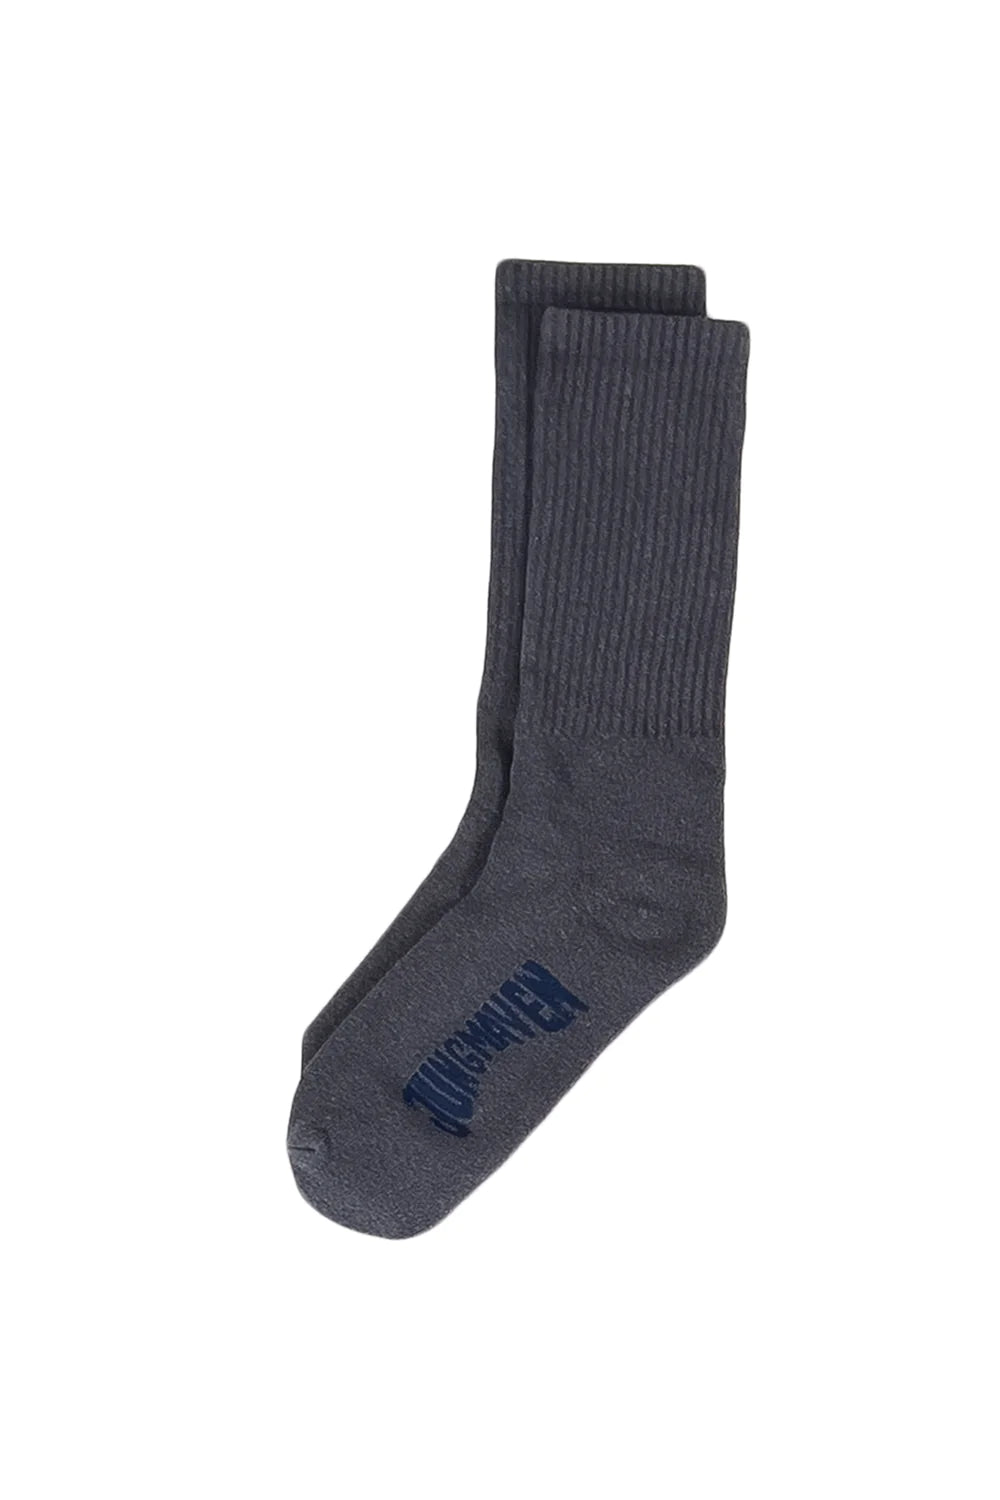 socks + tights – ad hoc penticton